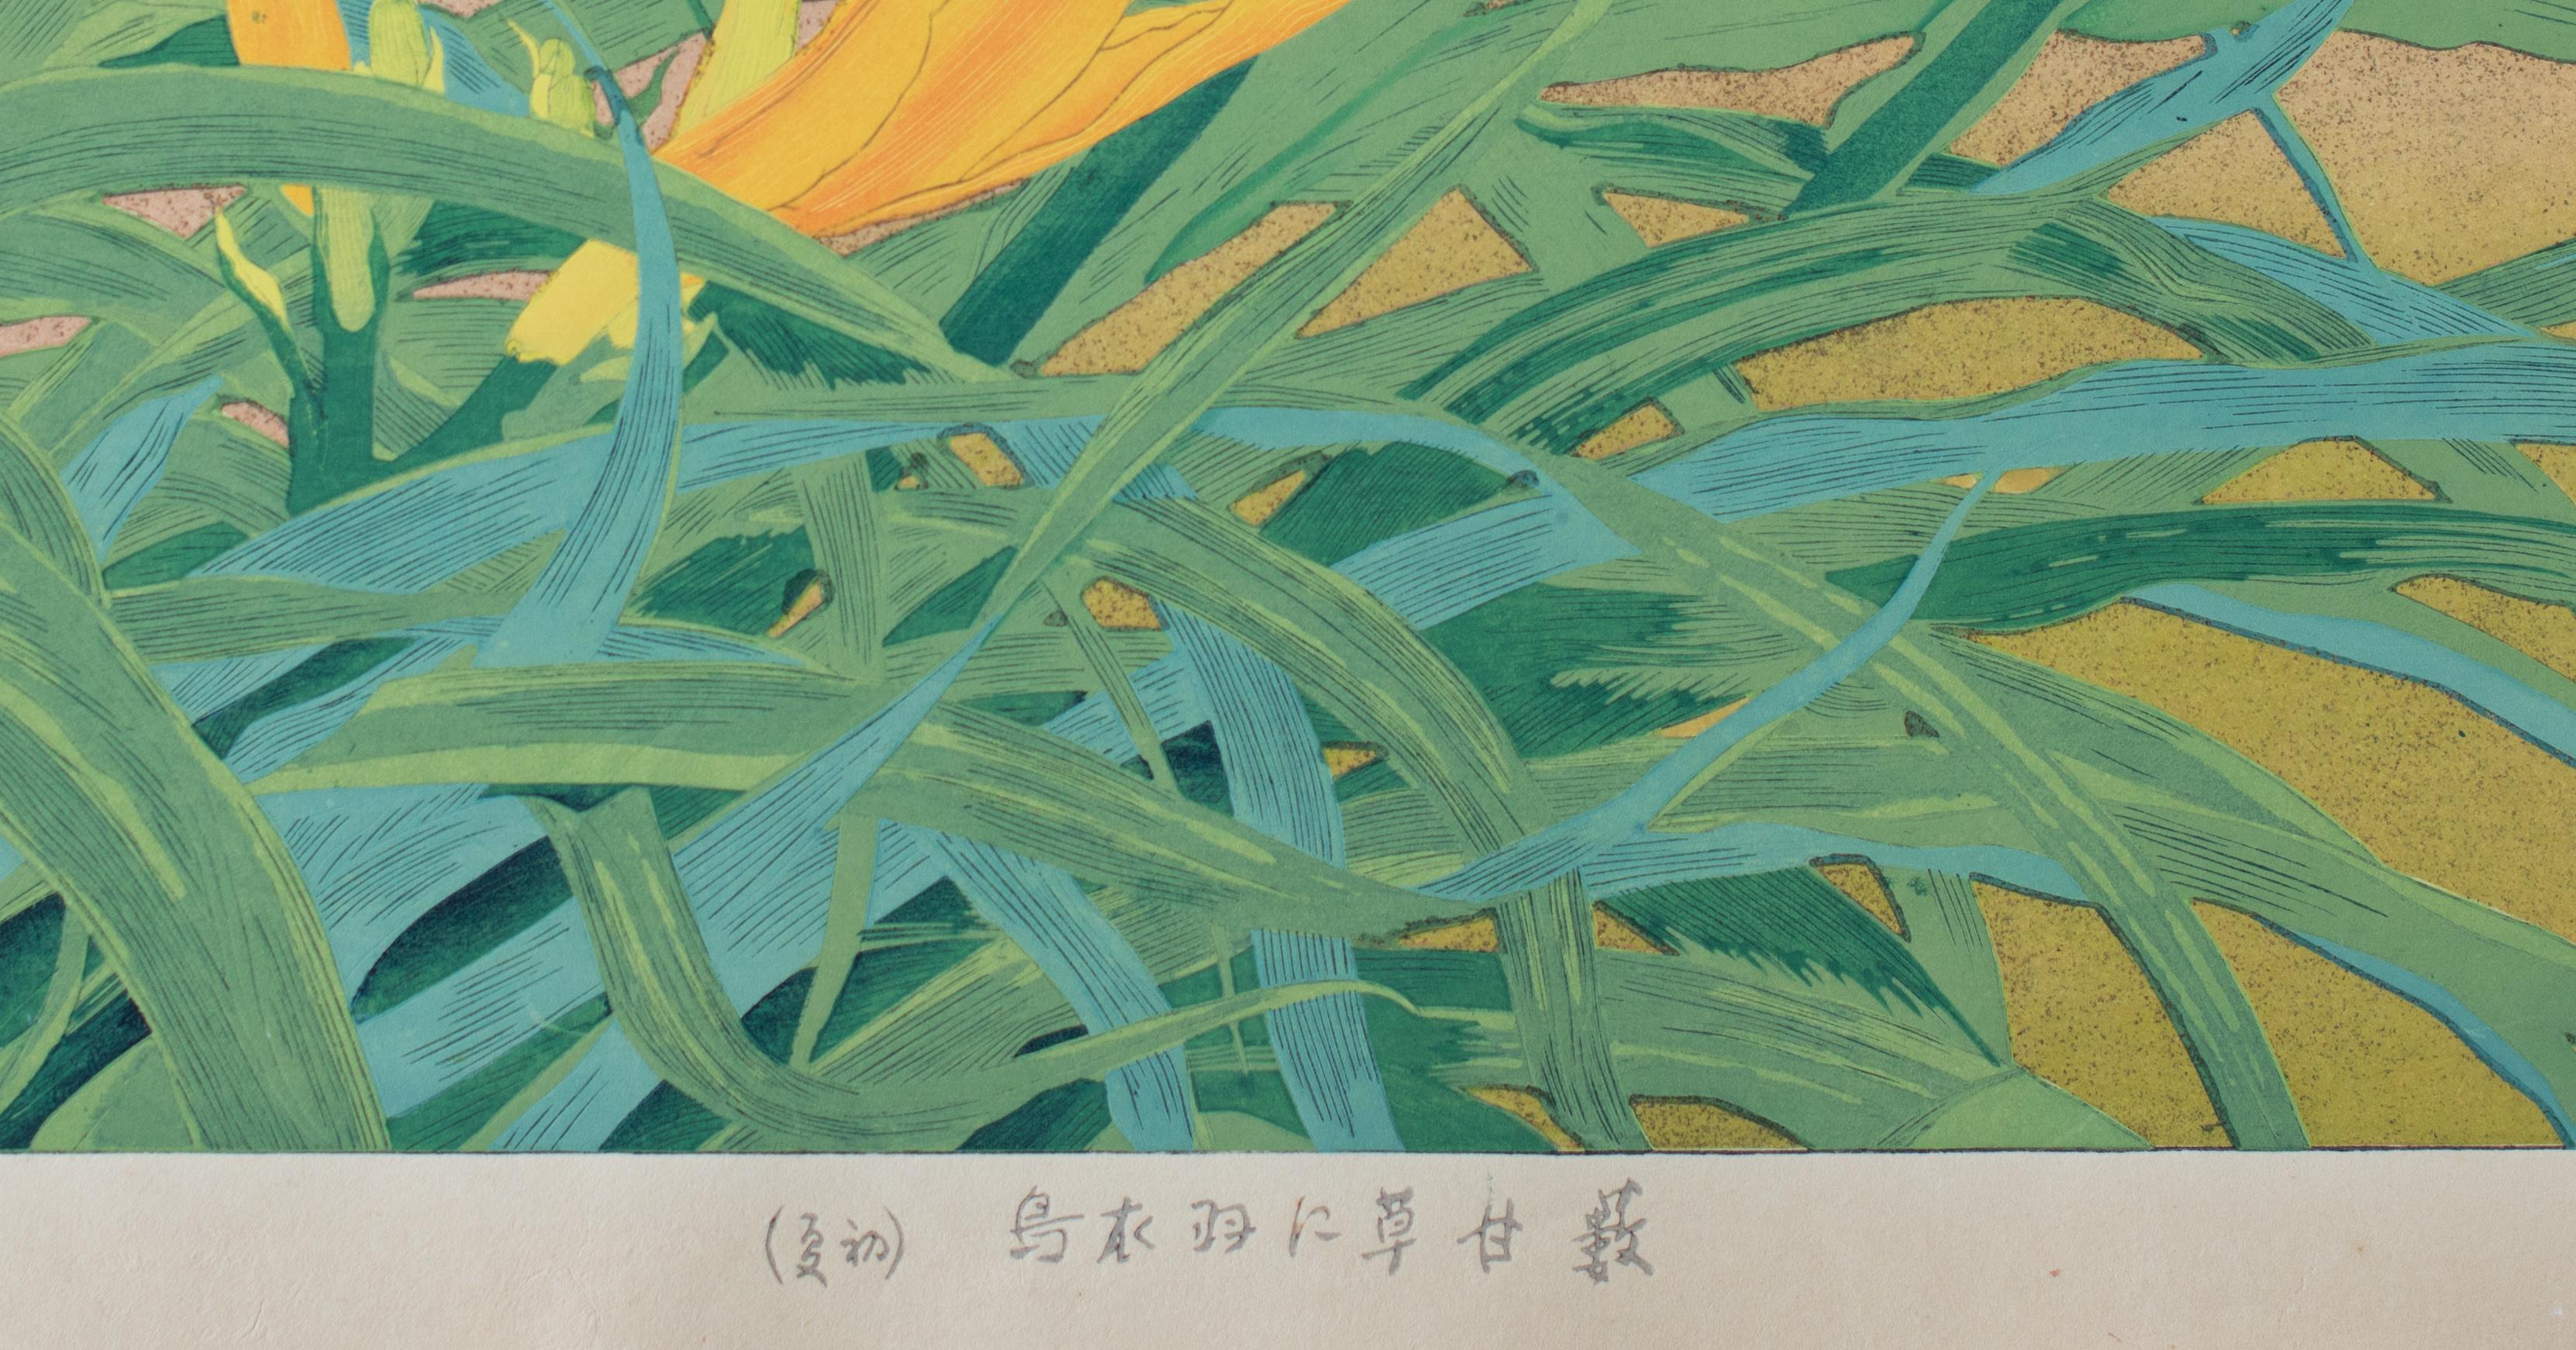 Yellow Daylily and African Black Bird - Showa Print by Tsuchiya Rakusan